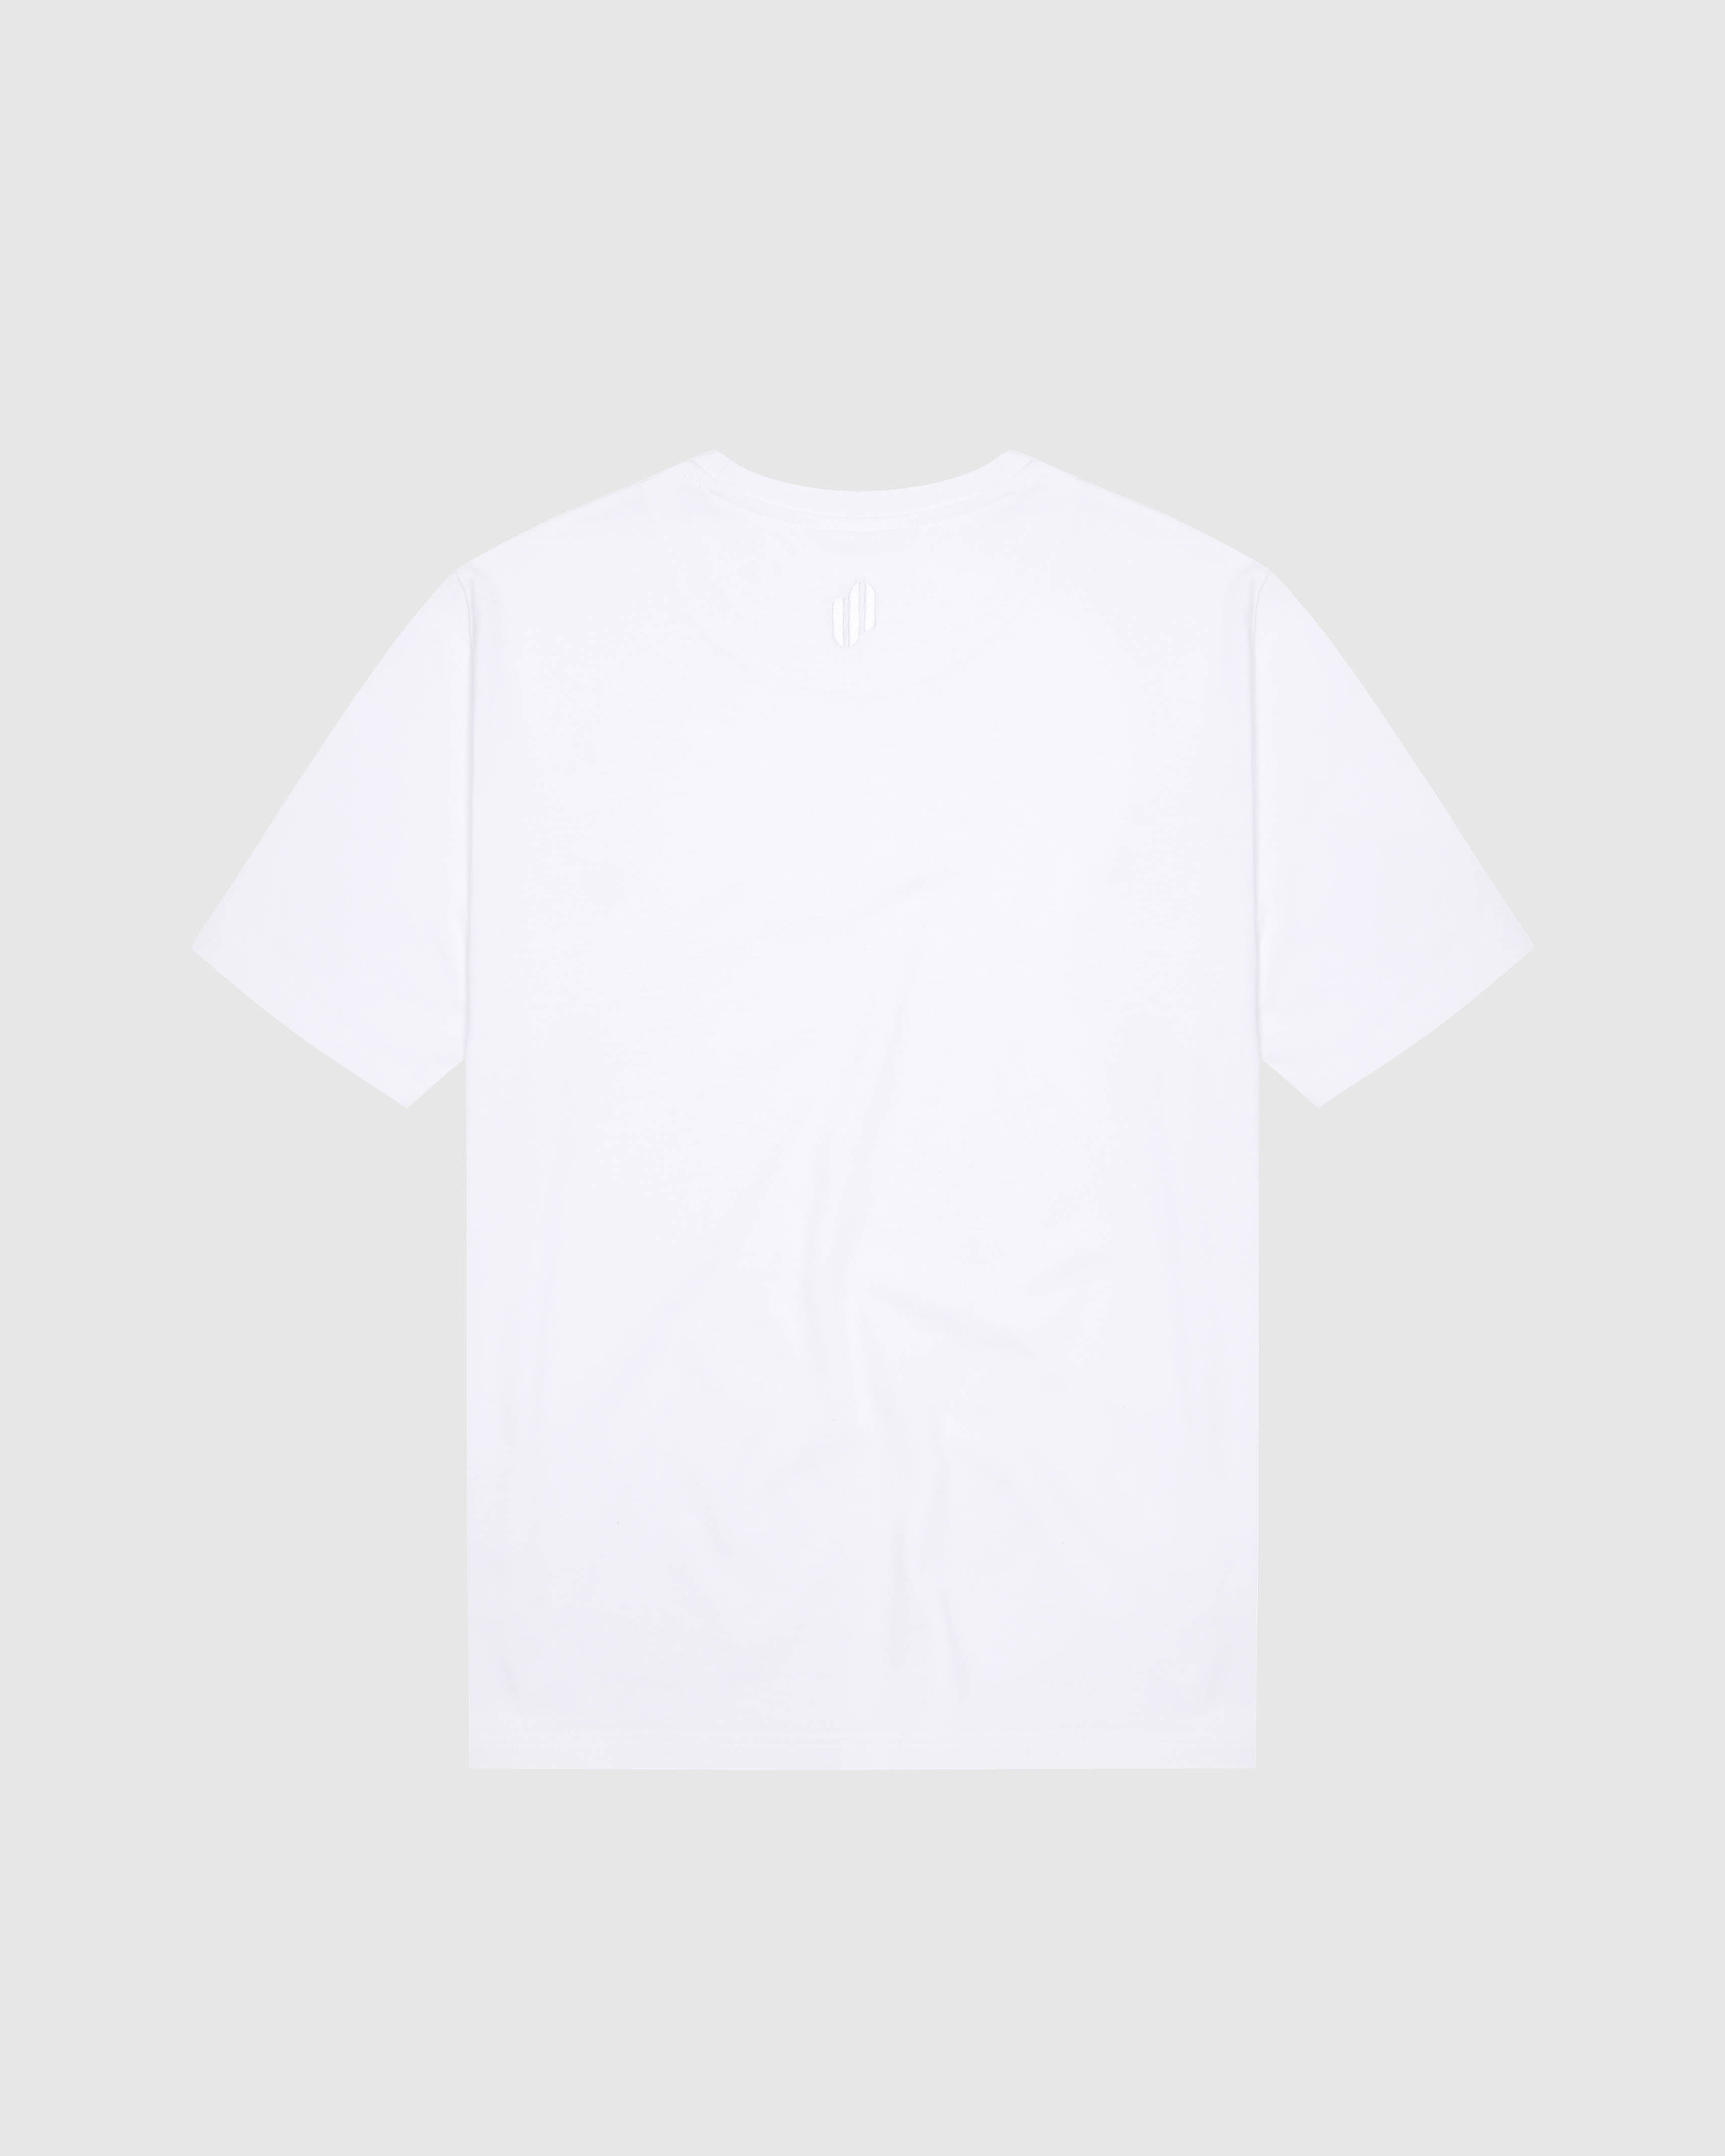 VC: GB-SCT - Women's Vintage White T-Shirt - Scotland